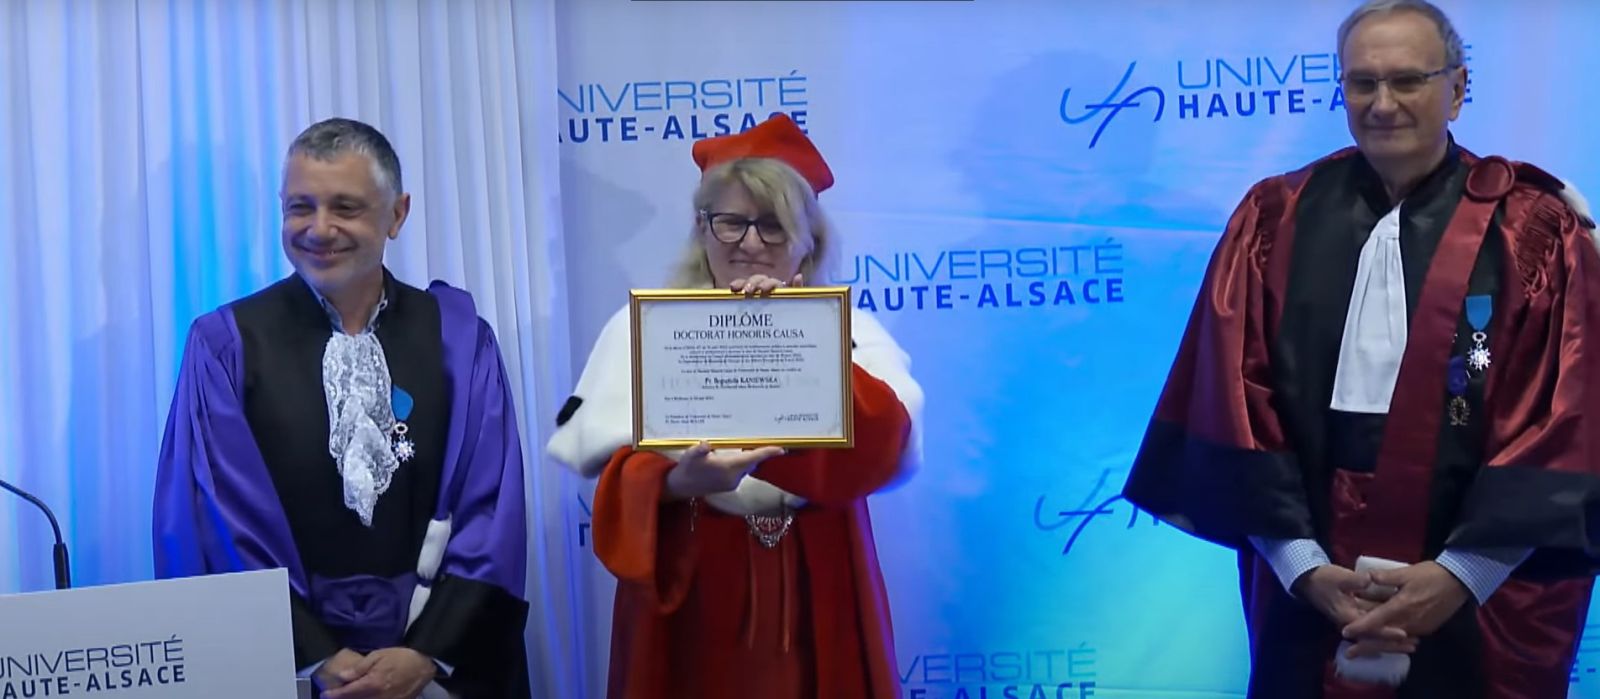 Ubrana w szaty rektorskie Rektor UAM Bogumiła Kaniewska trzyma w dłoniach dyplom doktora honoris causa, prezentując go publiczności, z jej lewej i prawej strony stoją dwaj mężczyźni w togach.